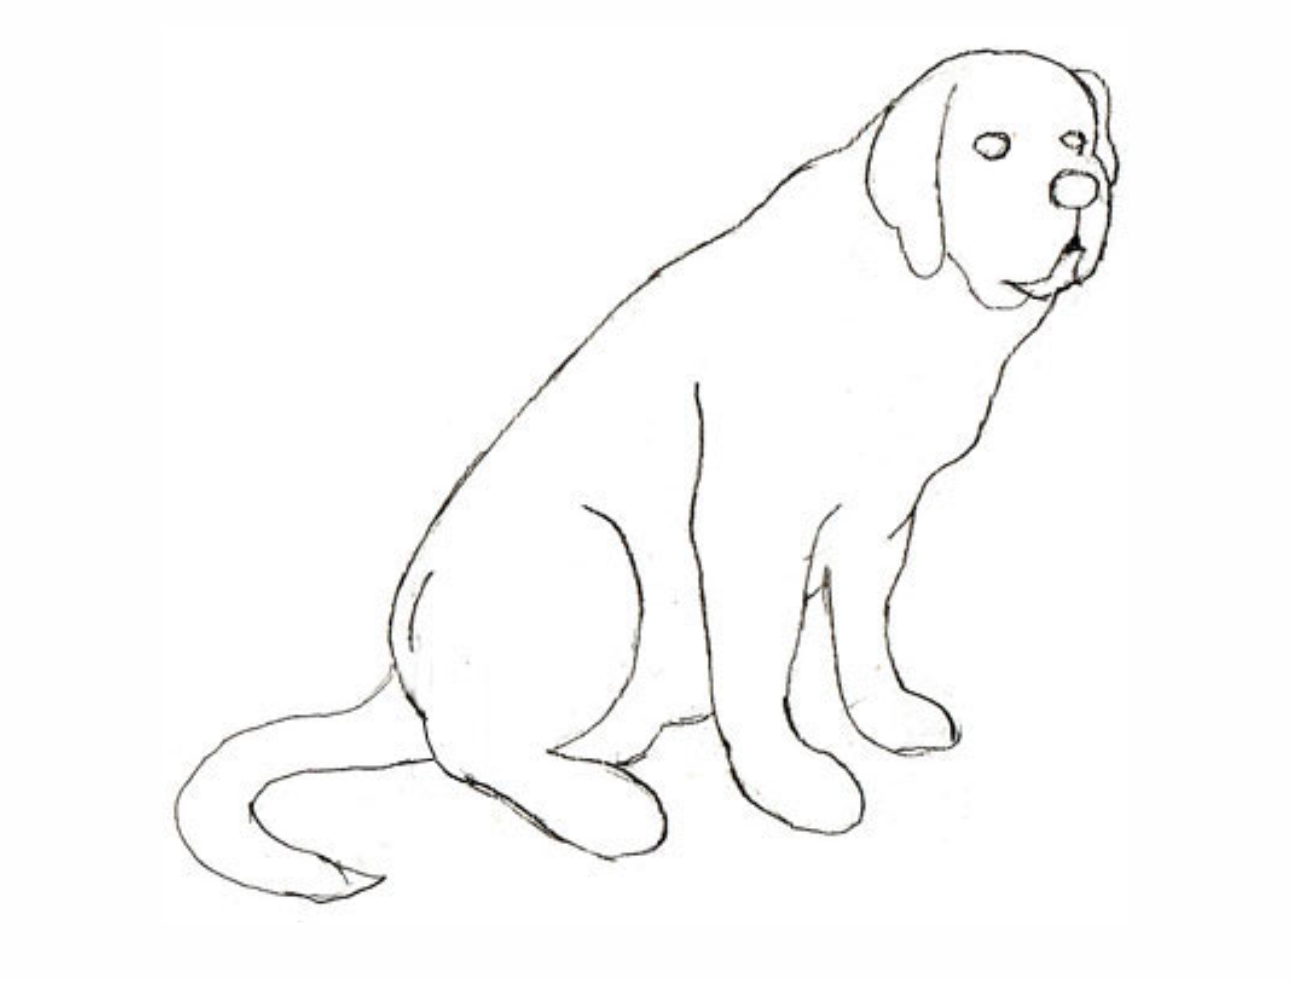 Урок рисования: Как нарисовать собаку поэтапно карандашом. 4 этап.